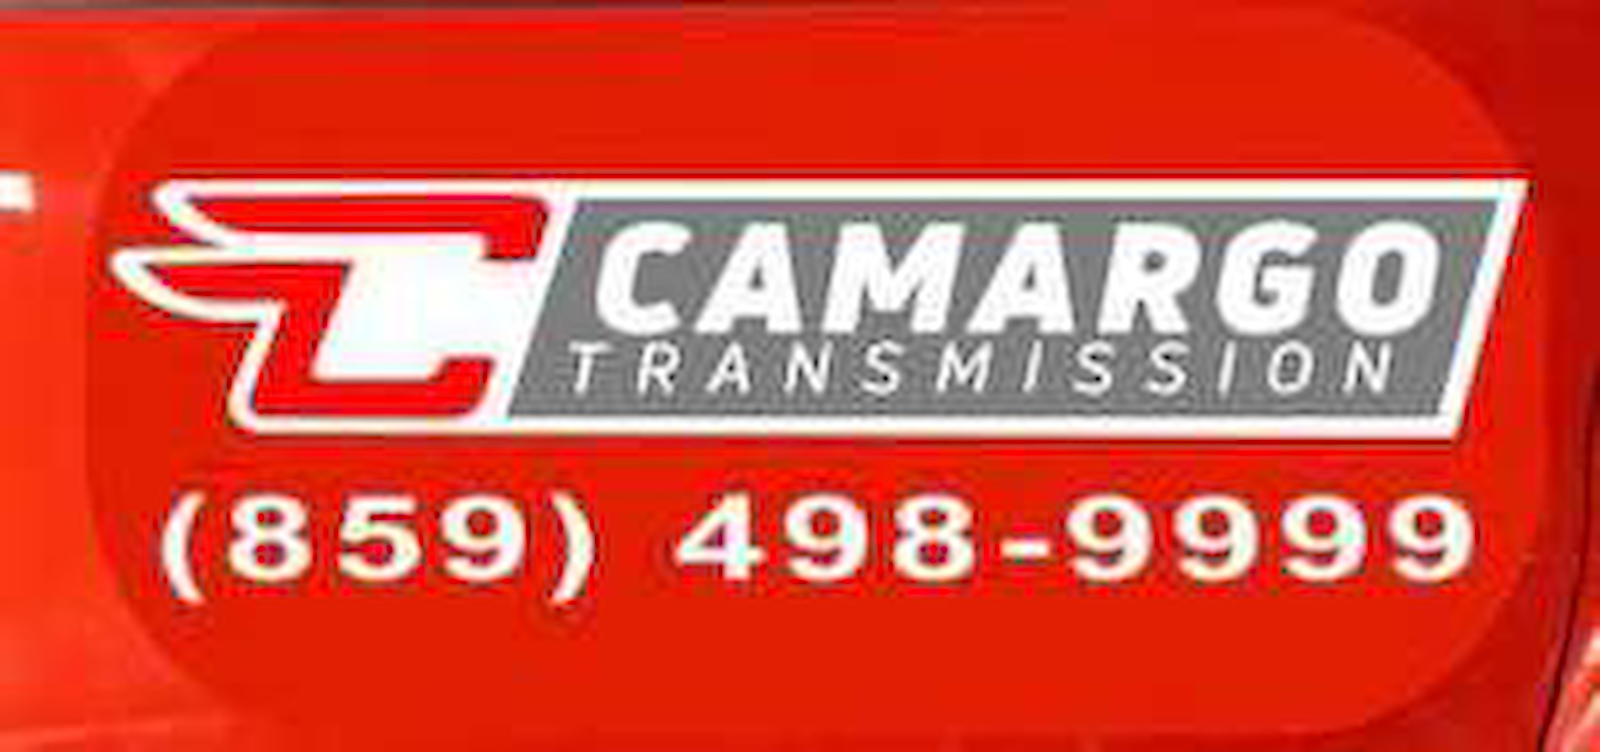 Camargo Transmission